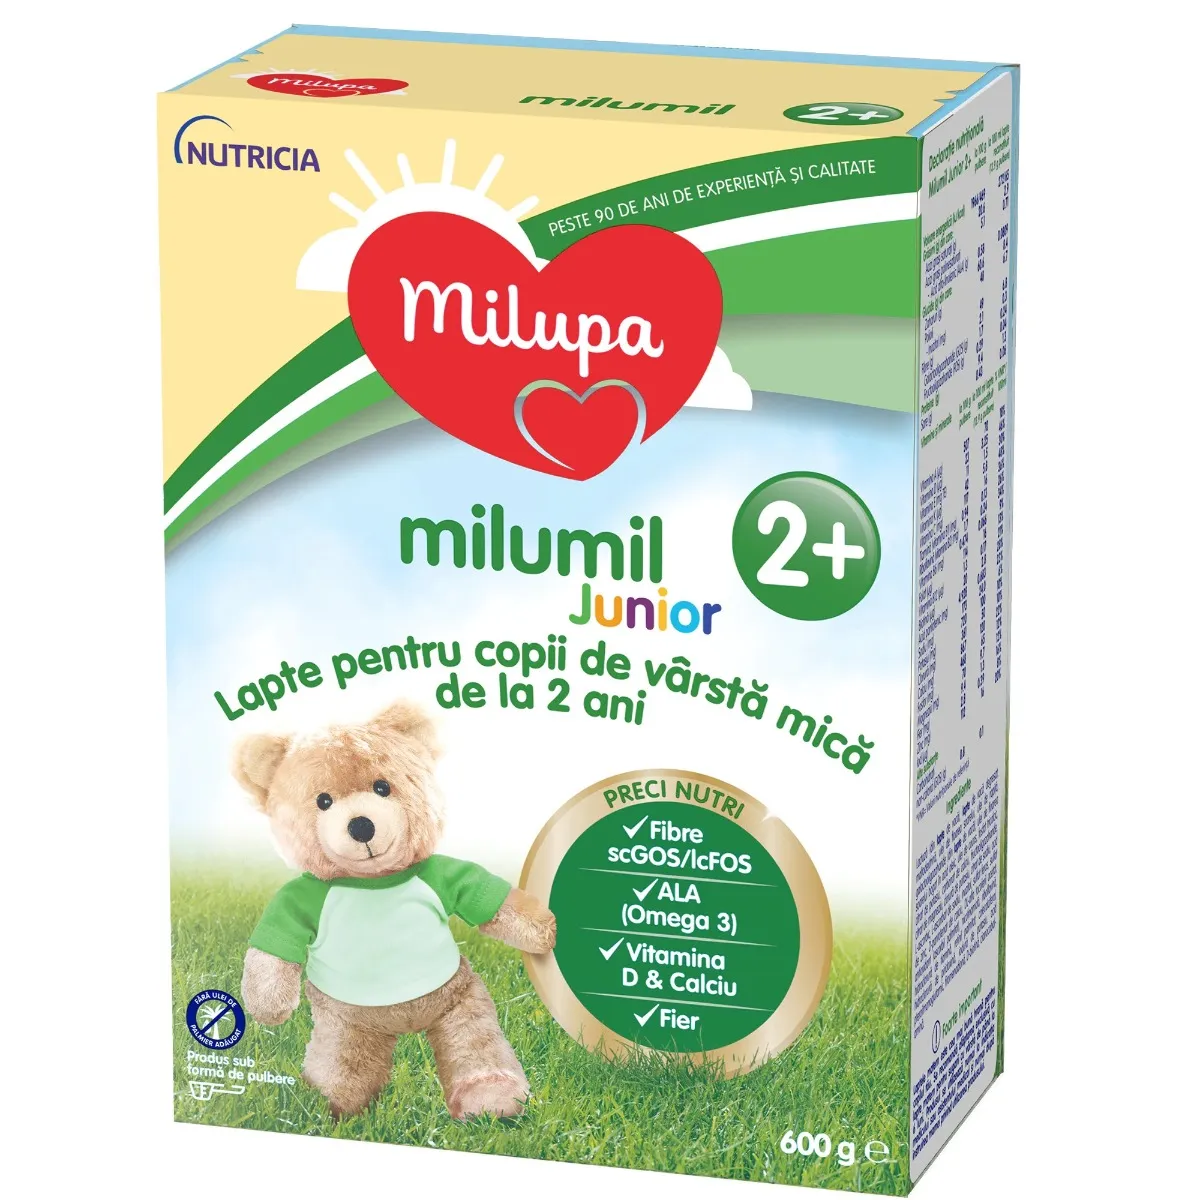 Lapte pentru copii de varsta mica de la 2 ani Milumil Junior 2+, 600g, Milupa